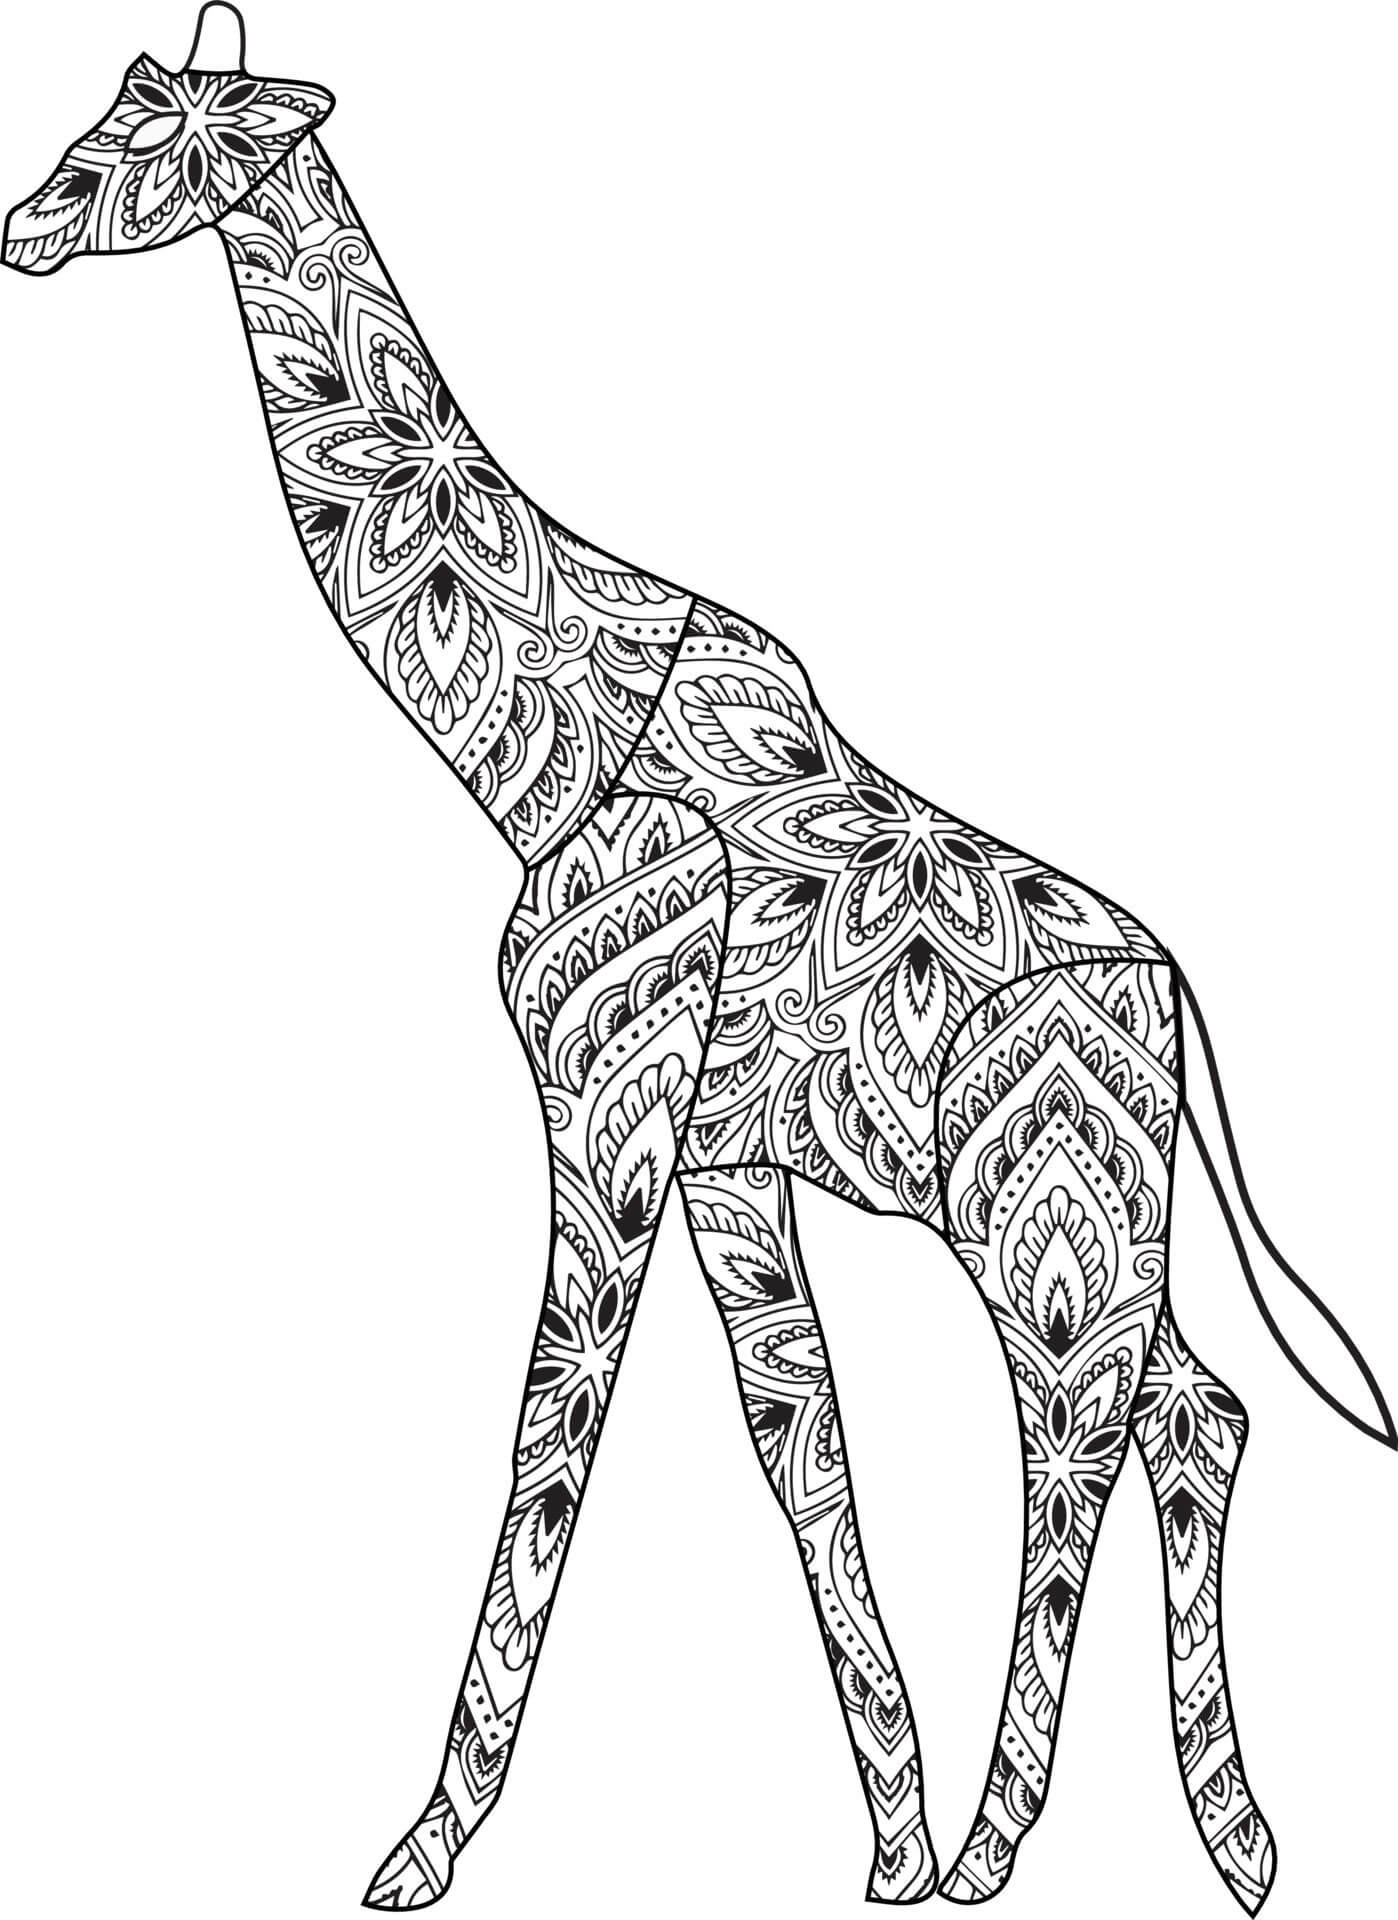 Mandala Giraffe Coloring Page Mandalas